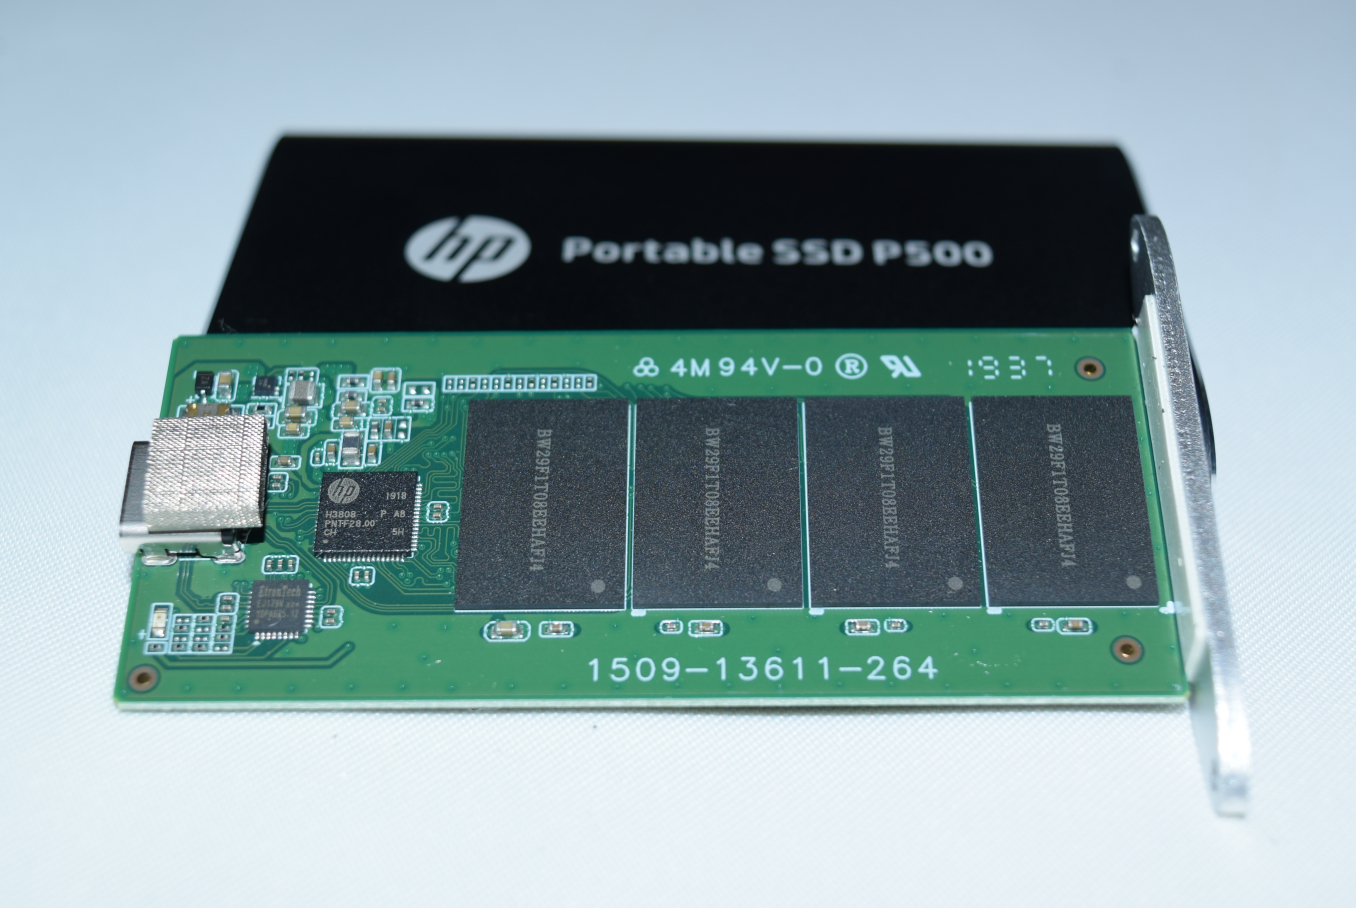 Disque SSD Externe HP P500 Portable 500Go